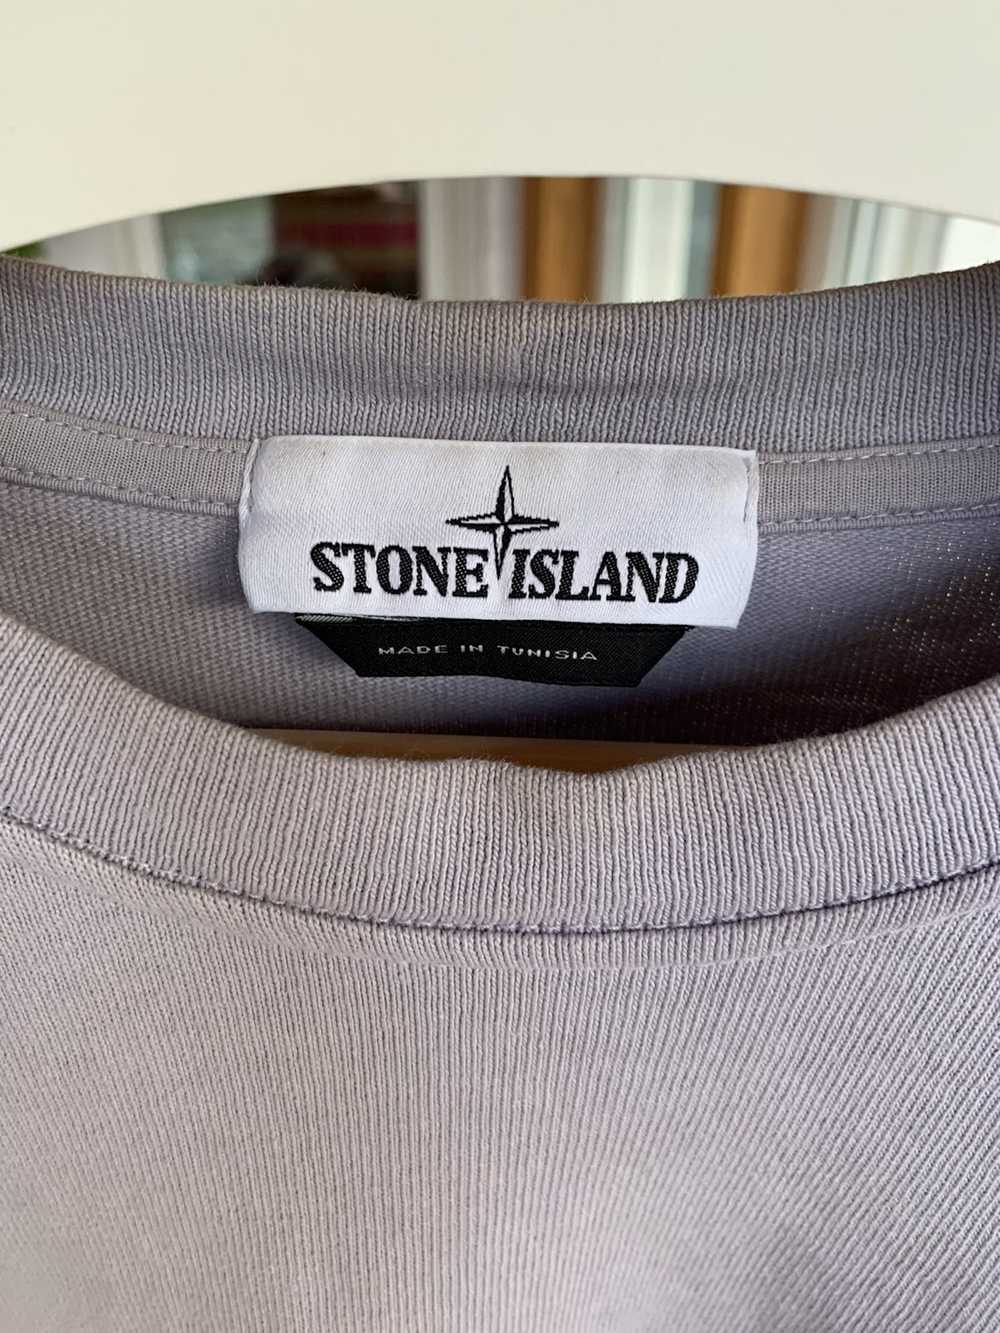 Stone Island Stone Island - Pebble Grey Sweatshirt - image 3